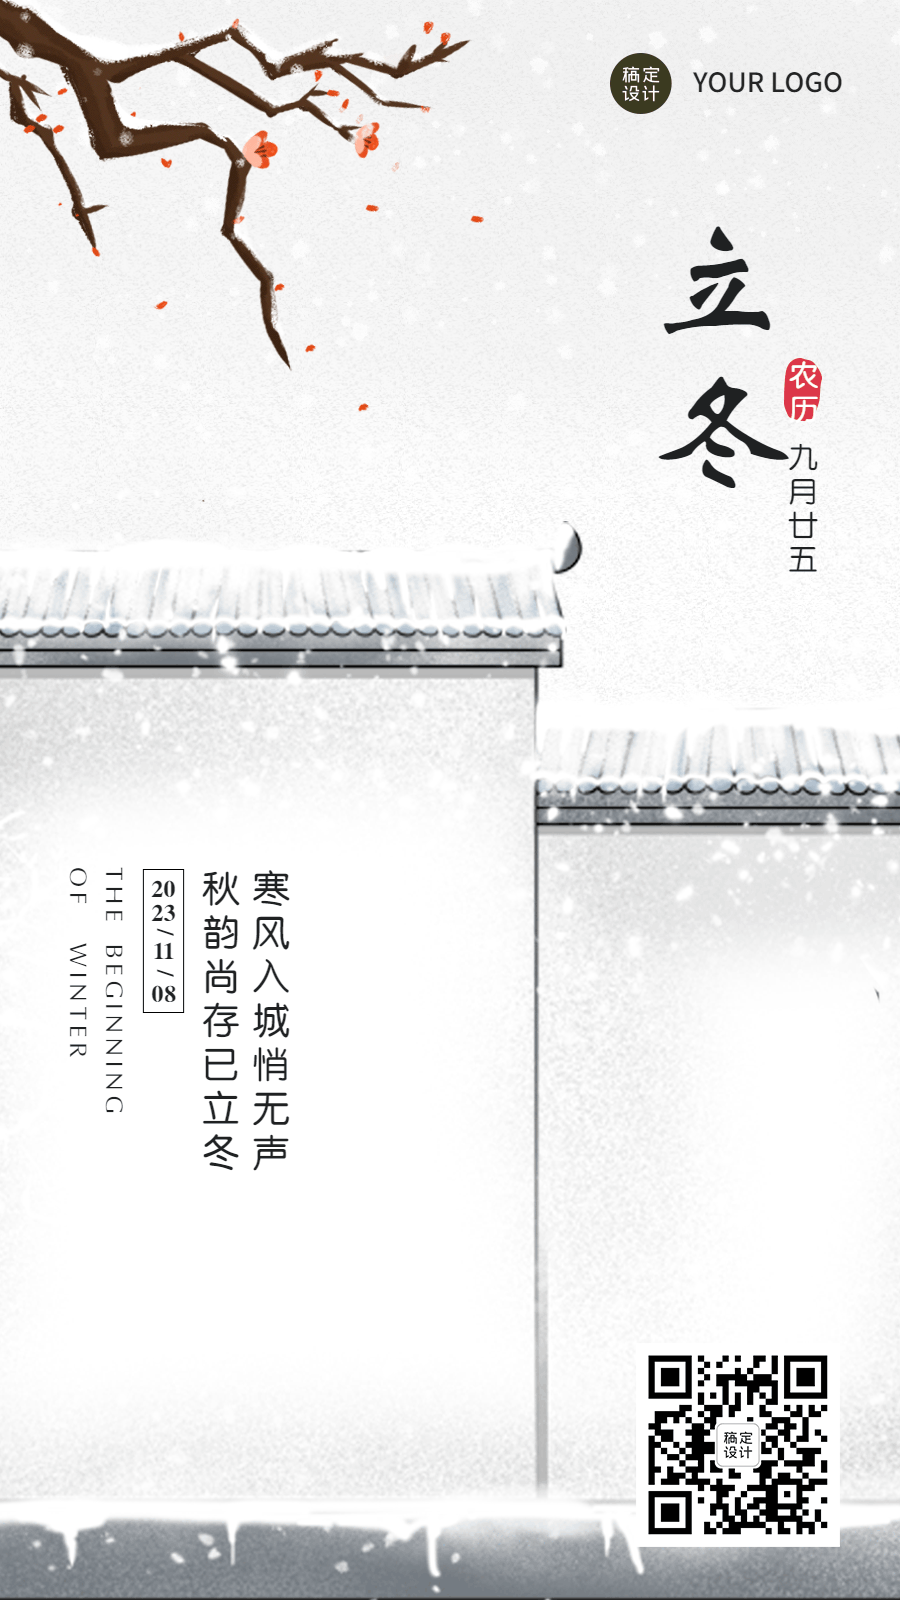 立冬节气祝福GIF动态海报预览效果